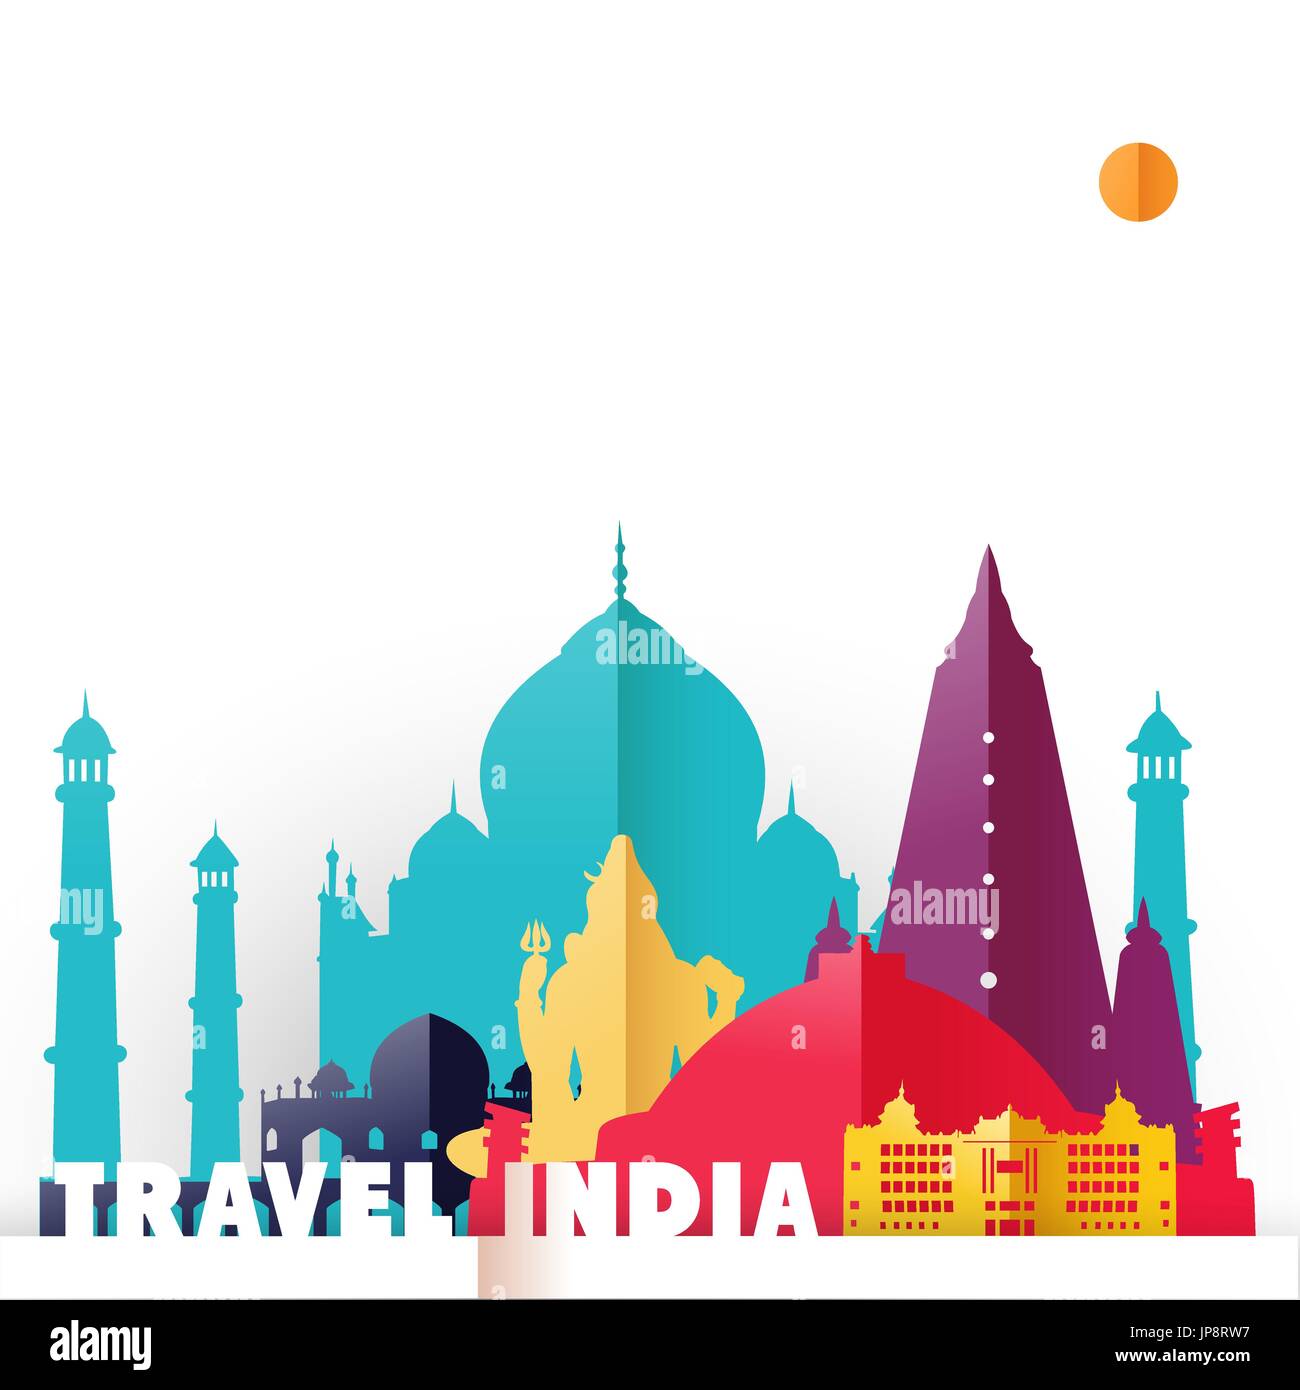 Viaggi India concetto illustrazione in carta tagliata stile, famosi punti di riferimento mondiale del paese Indiano. Include il Taj Mahal, Shiva statua, templi buddisti. EP Illustrazione Vettoriale